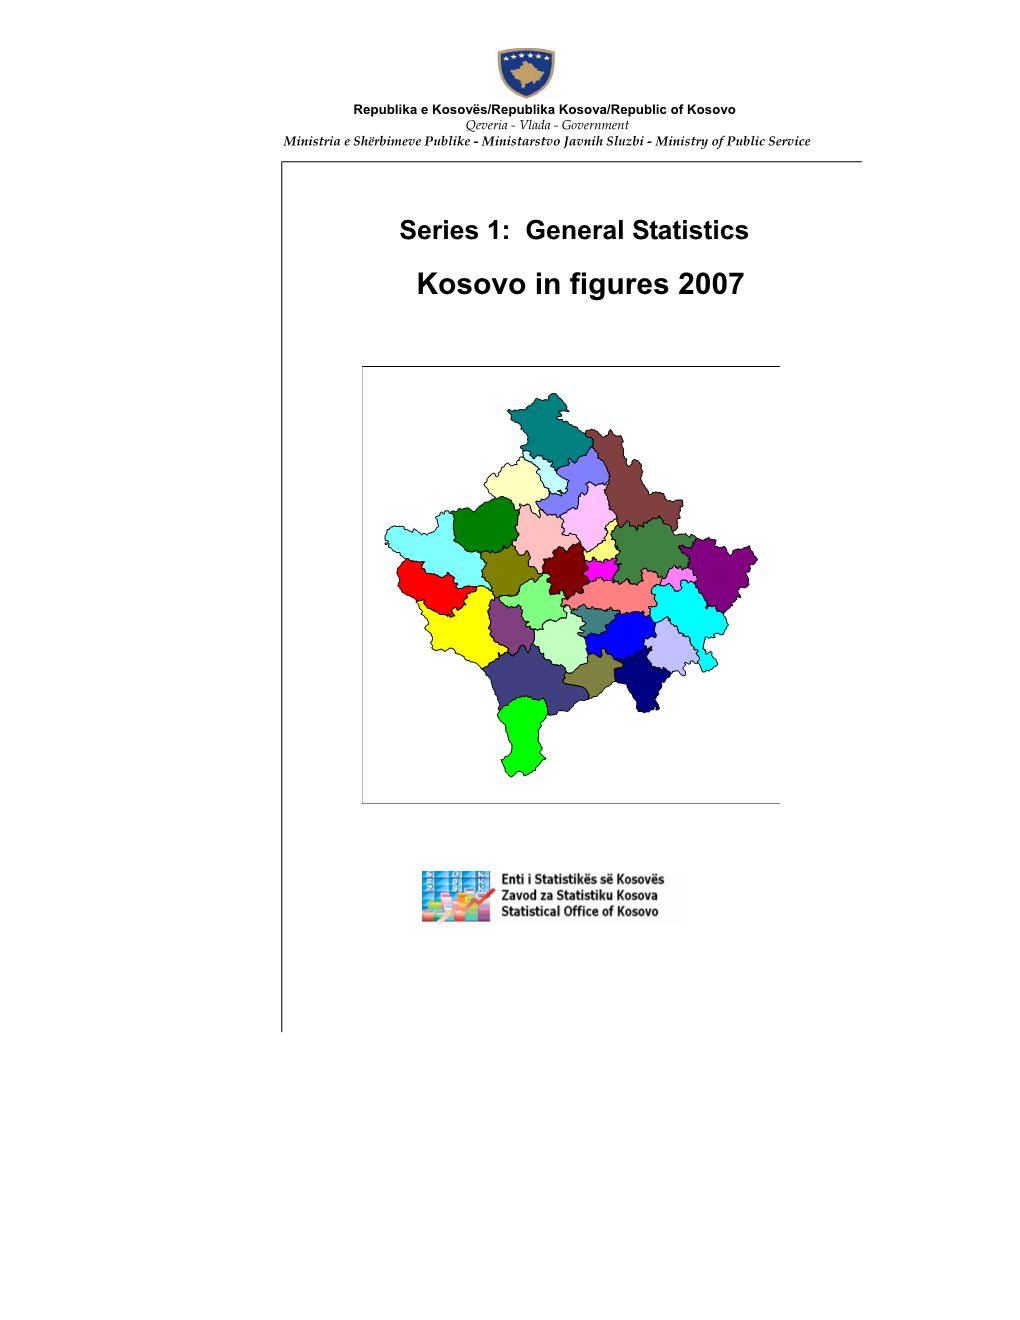 Series 1: General Statistics